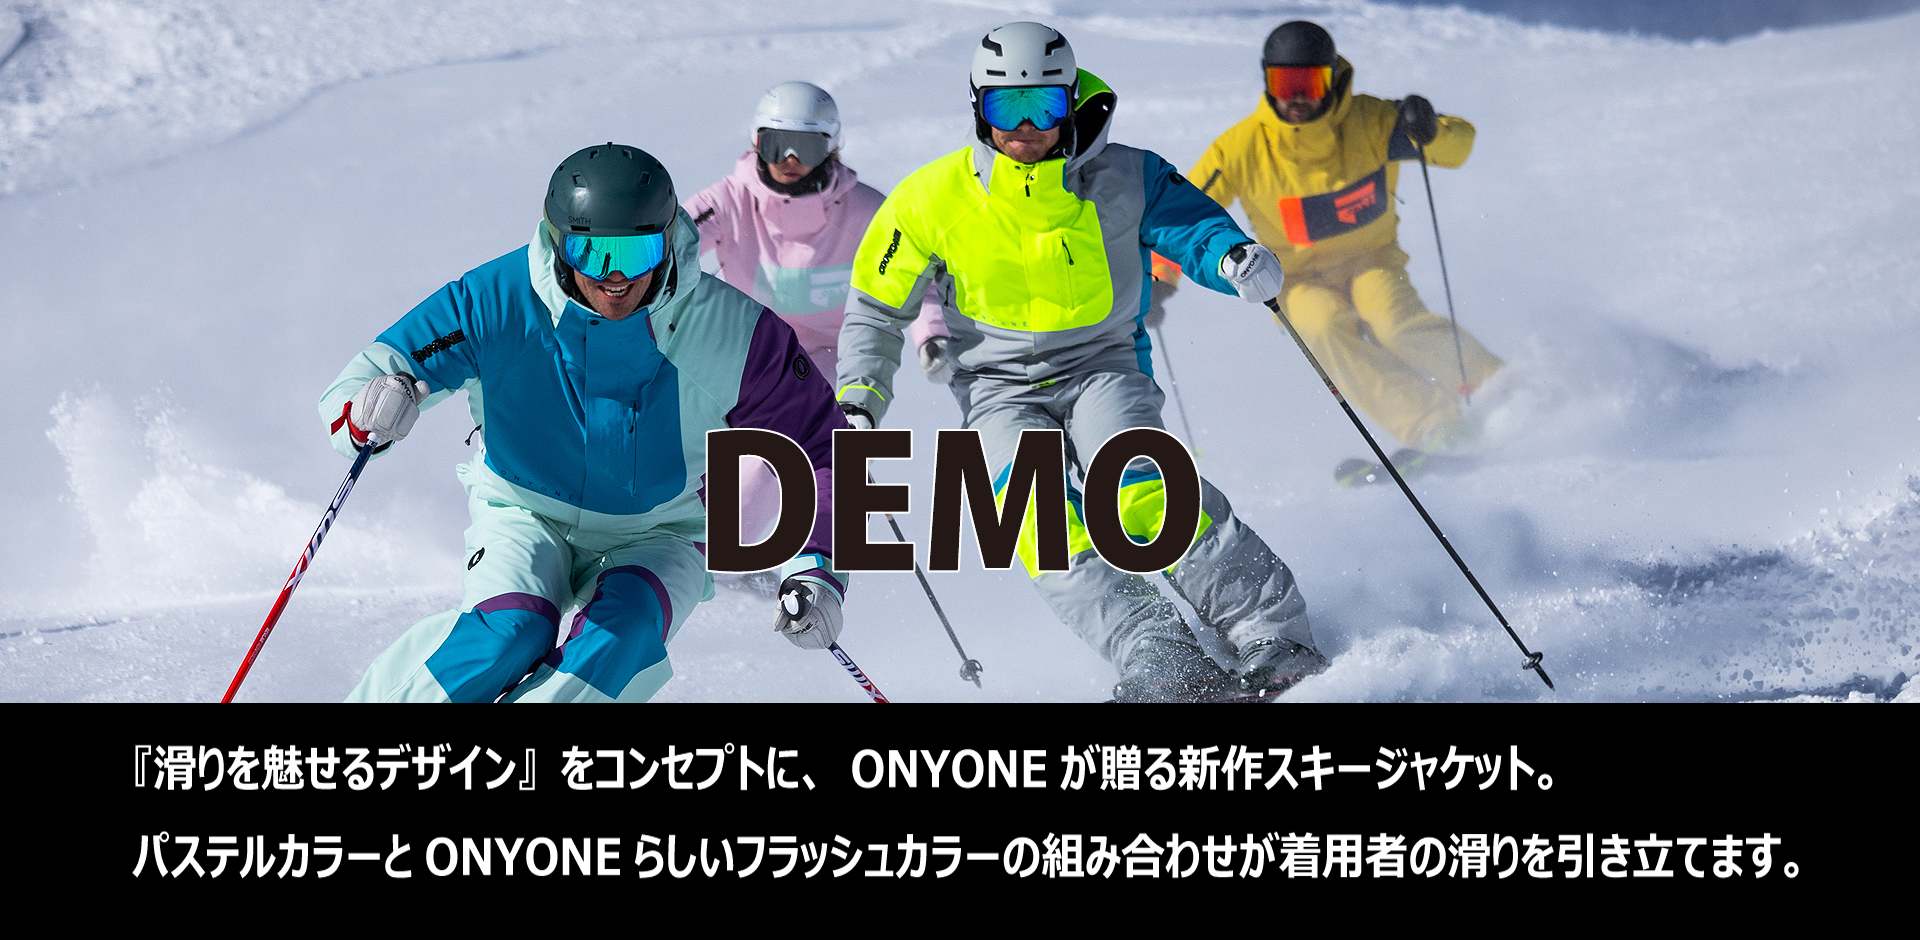 DEMOモデル　オーダー締め切り2024年6月23日 DEMO『滑りを魅せるデザイン』をコンセプトに、ONYONE・オンヨネが贈る新作スキージャケット。